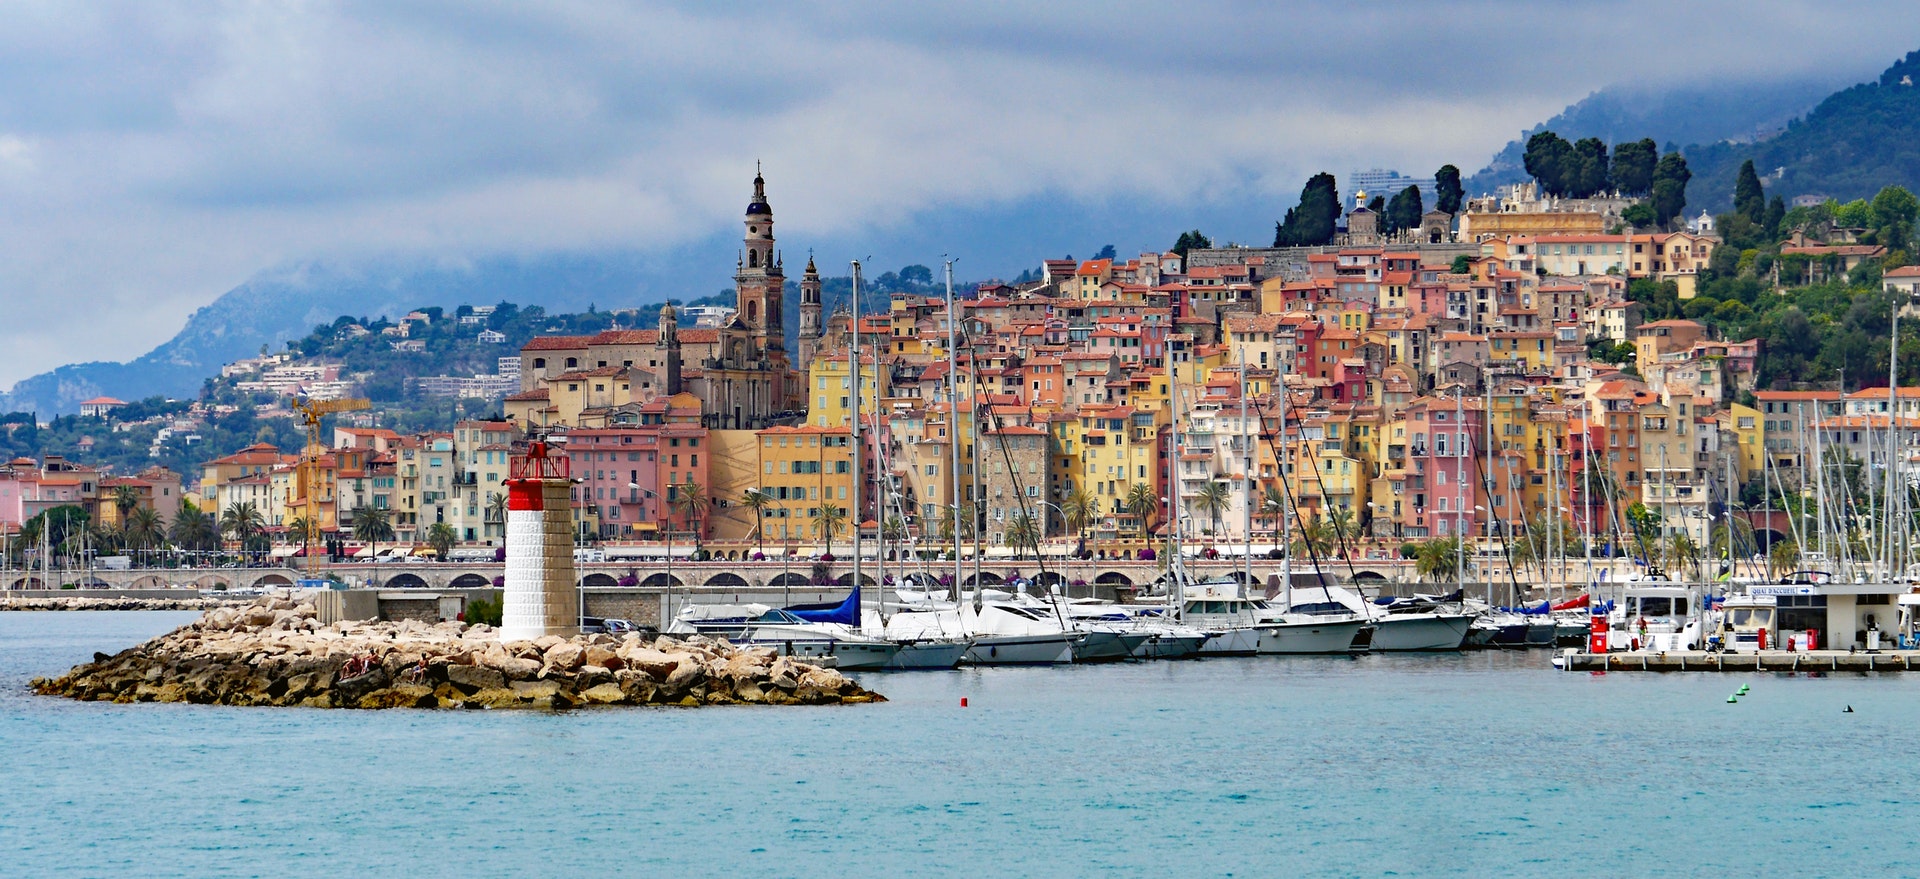 Comment ça se passe avec le marché immobilier de la Côte d'Azur en 2020